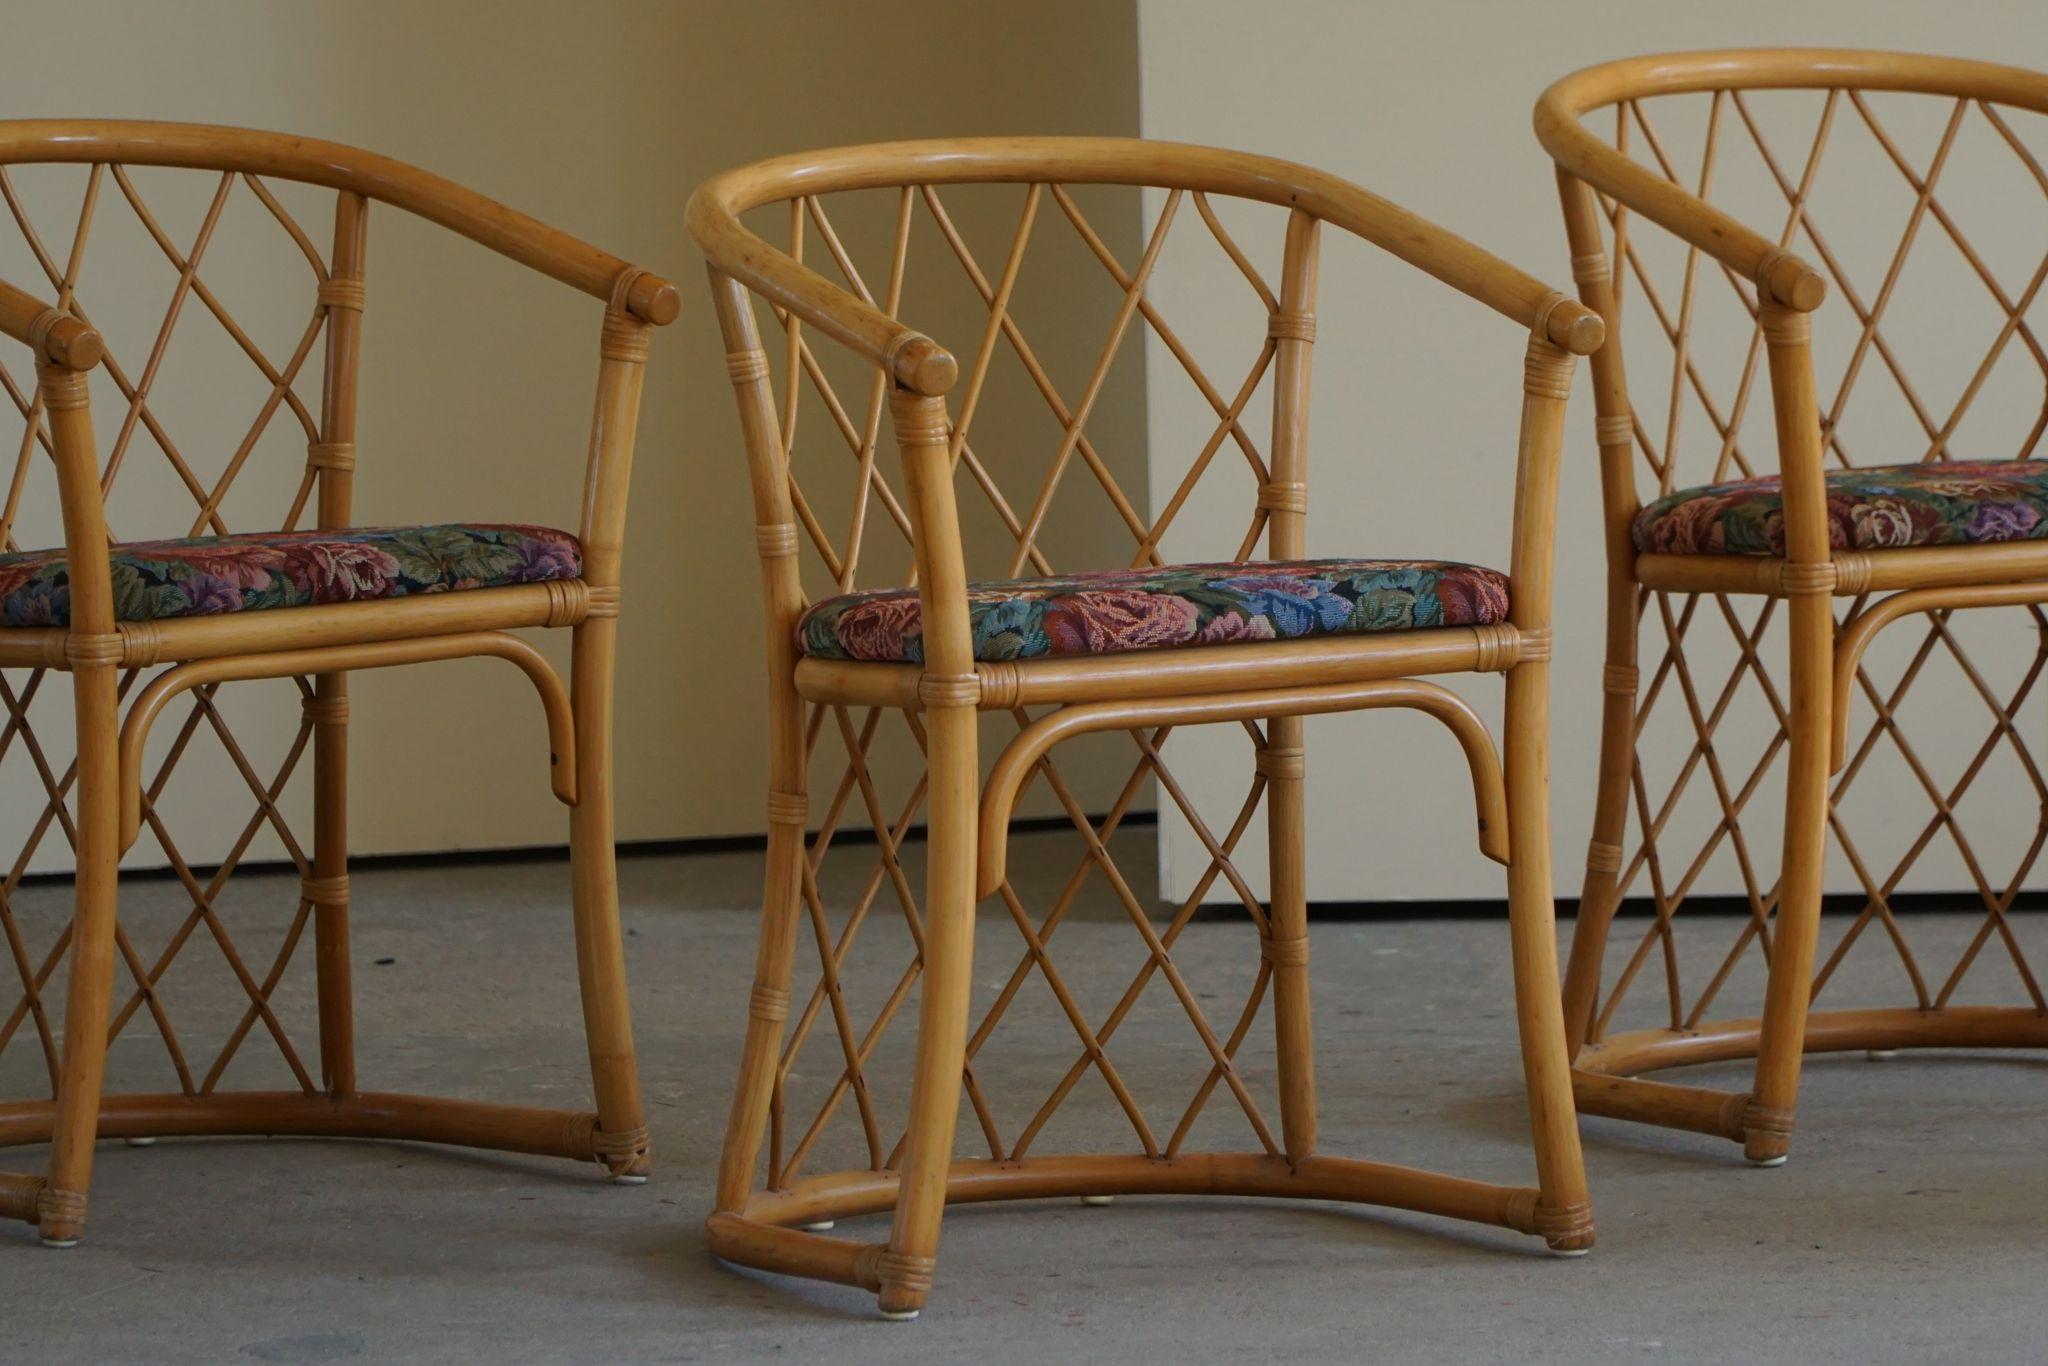 Bel ensemble de six chaises de salle à manger en bambou de style bohème, recouvertes d'un tissu vintage. Fabriqué au Danemark, années 1960.

Cet ensemble reste en bon état. 

